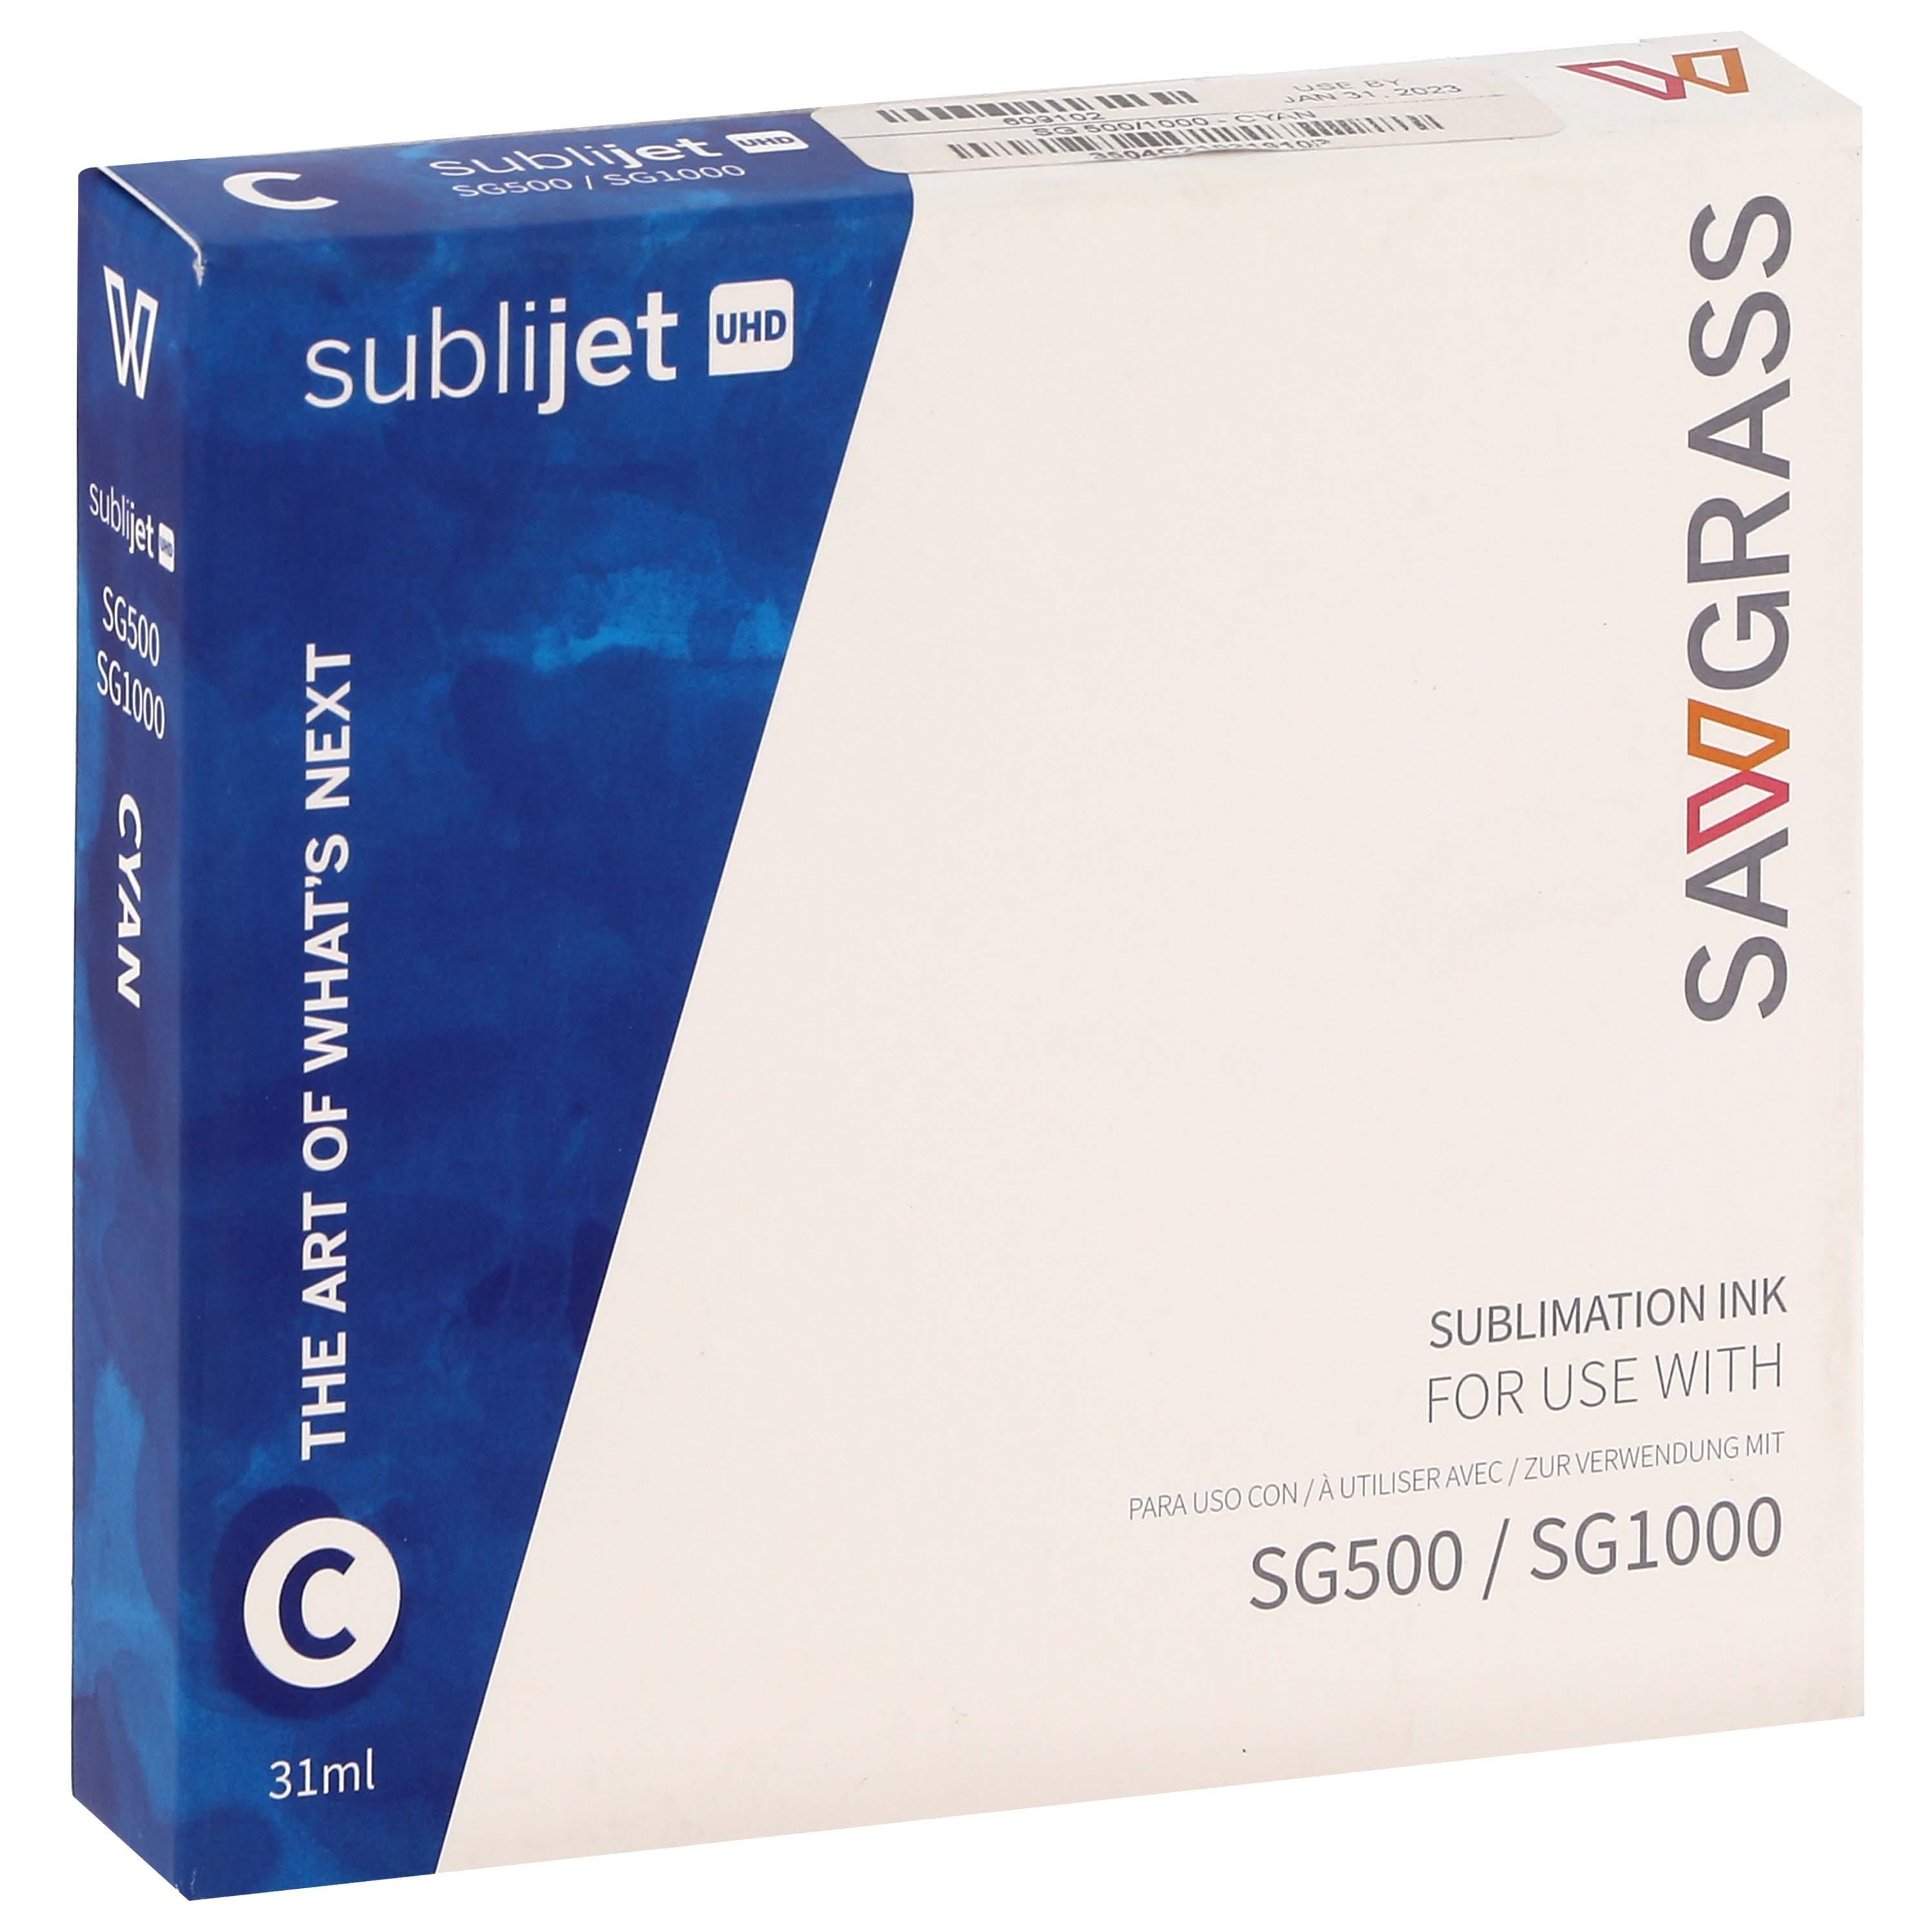 SAWGRASS - Encre sublimation SubliJet-UHD - Cyan 31ml - pour Sawgrass SG500 et SG1000